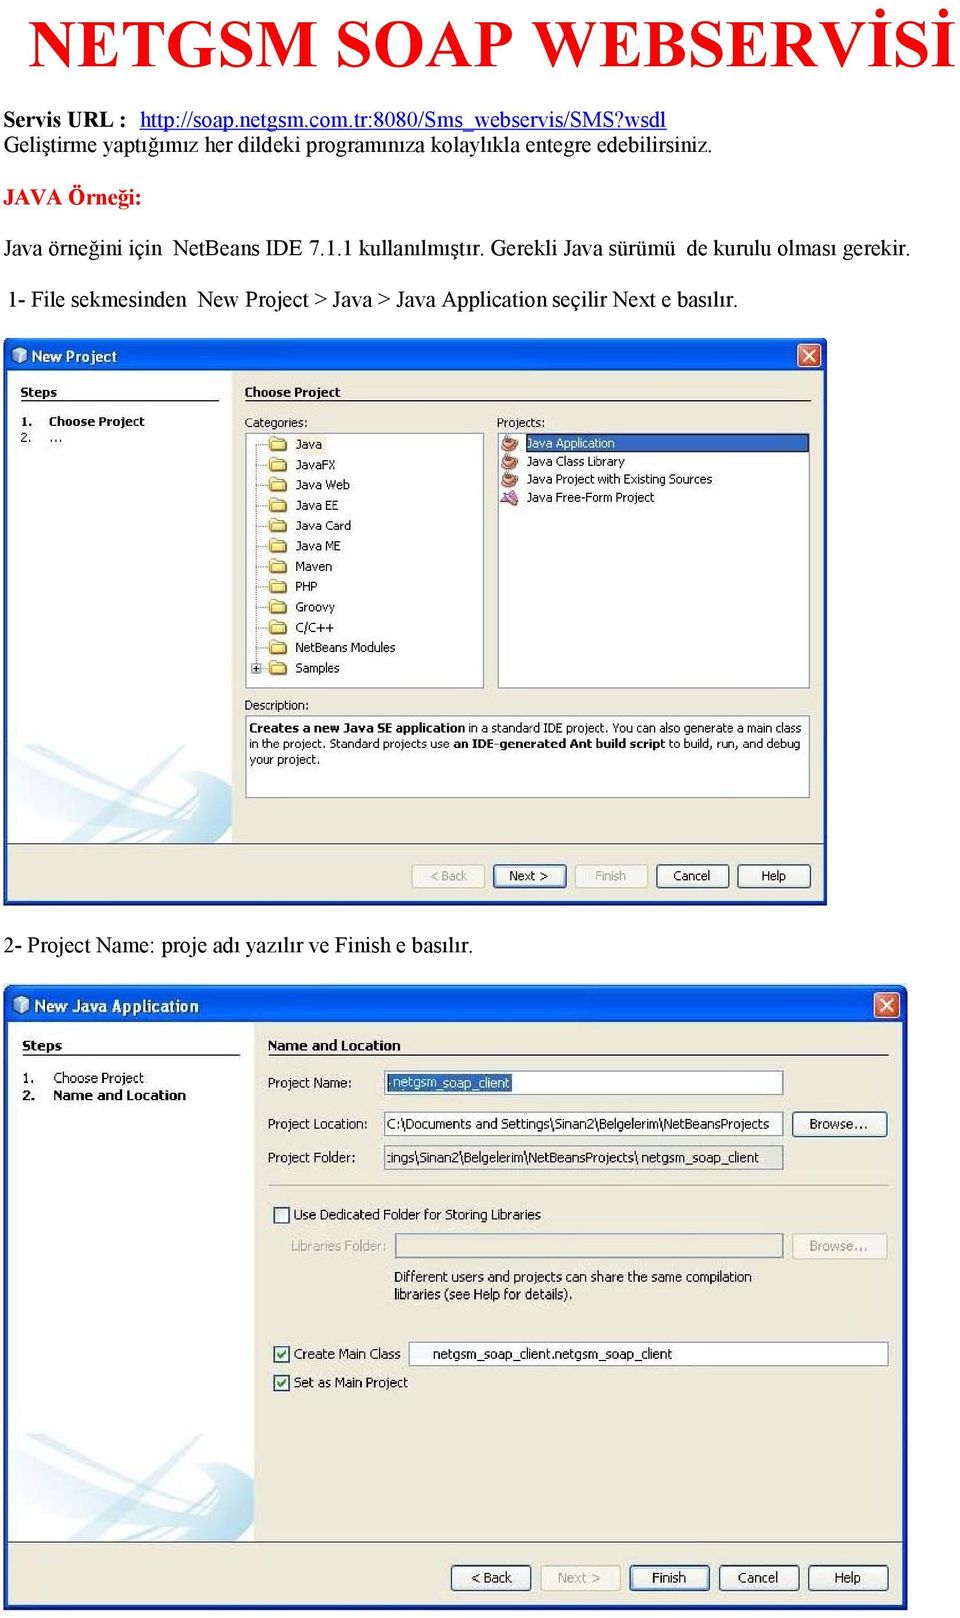 JAVA Örneği: Java örneğini için NetBeans IDE 7.1.1 kullanılmıştır.